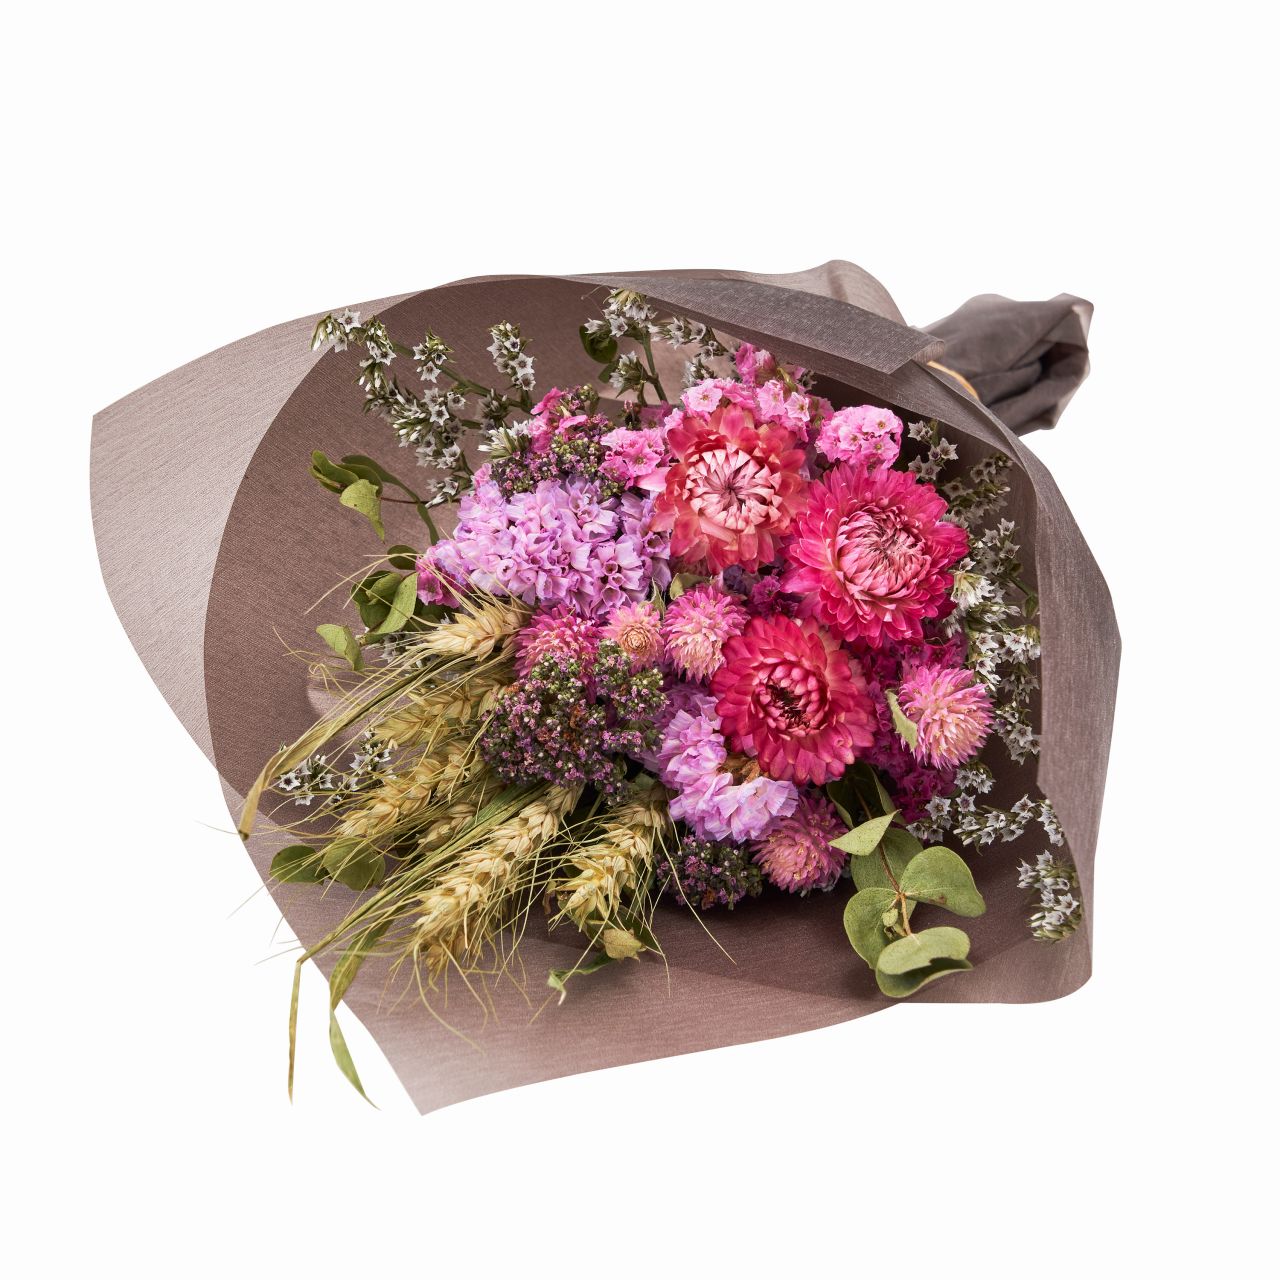 マイフラ 通販 Sense Of Nature 国産ドライフラワーのエコバッグブーケ 大 ピンク アレンジメント フラワーギフト Zd 002 ピンク フラワーアレンジメント キット ギフト 全国にmagiq 花器 花資材などをお届けします